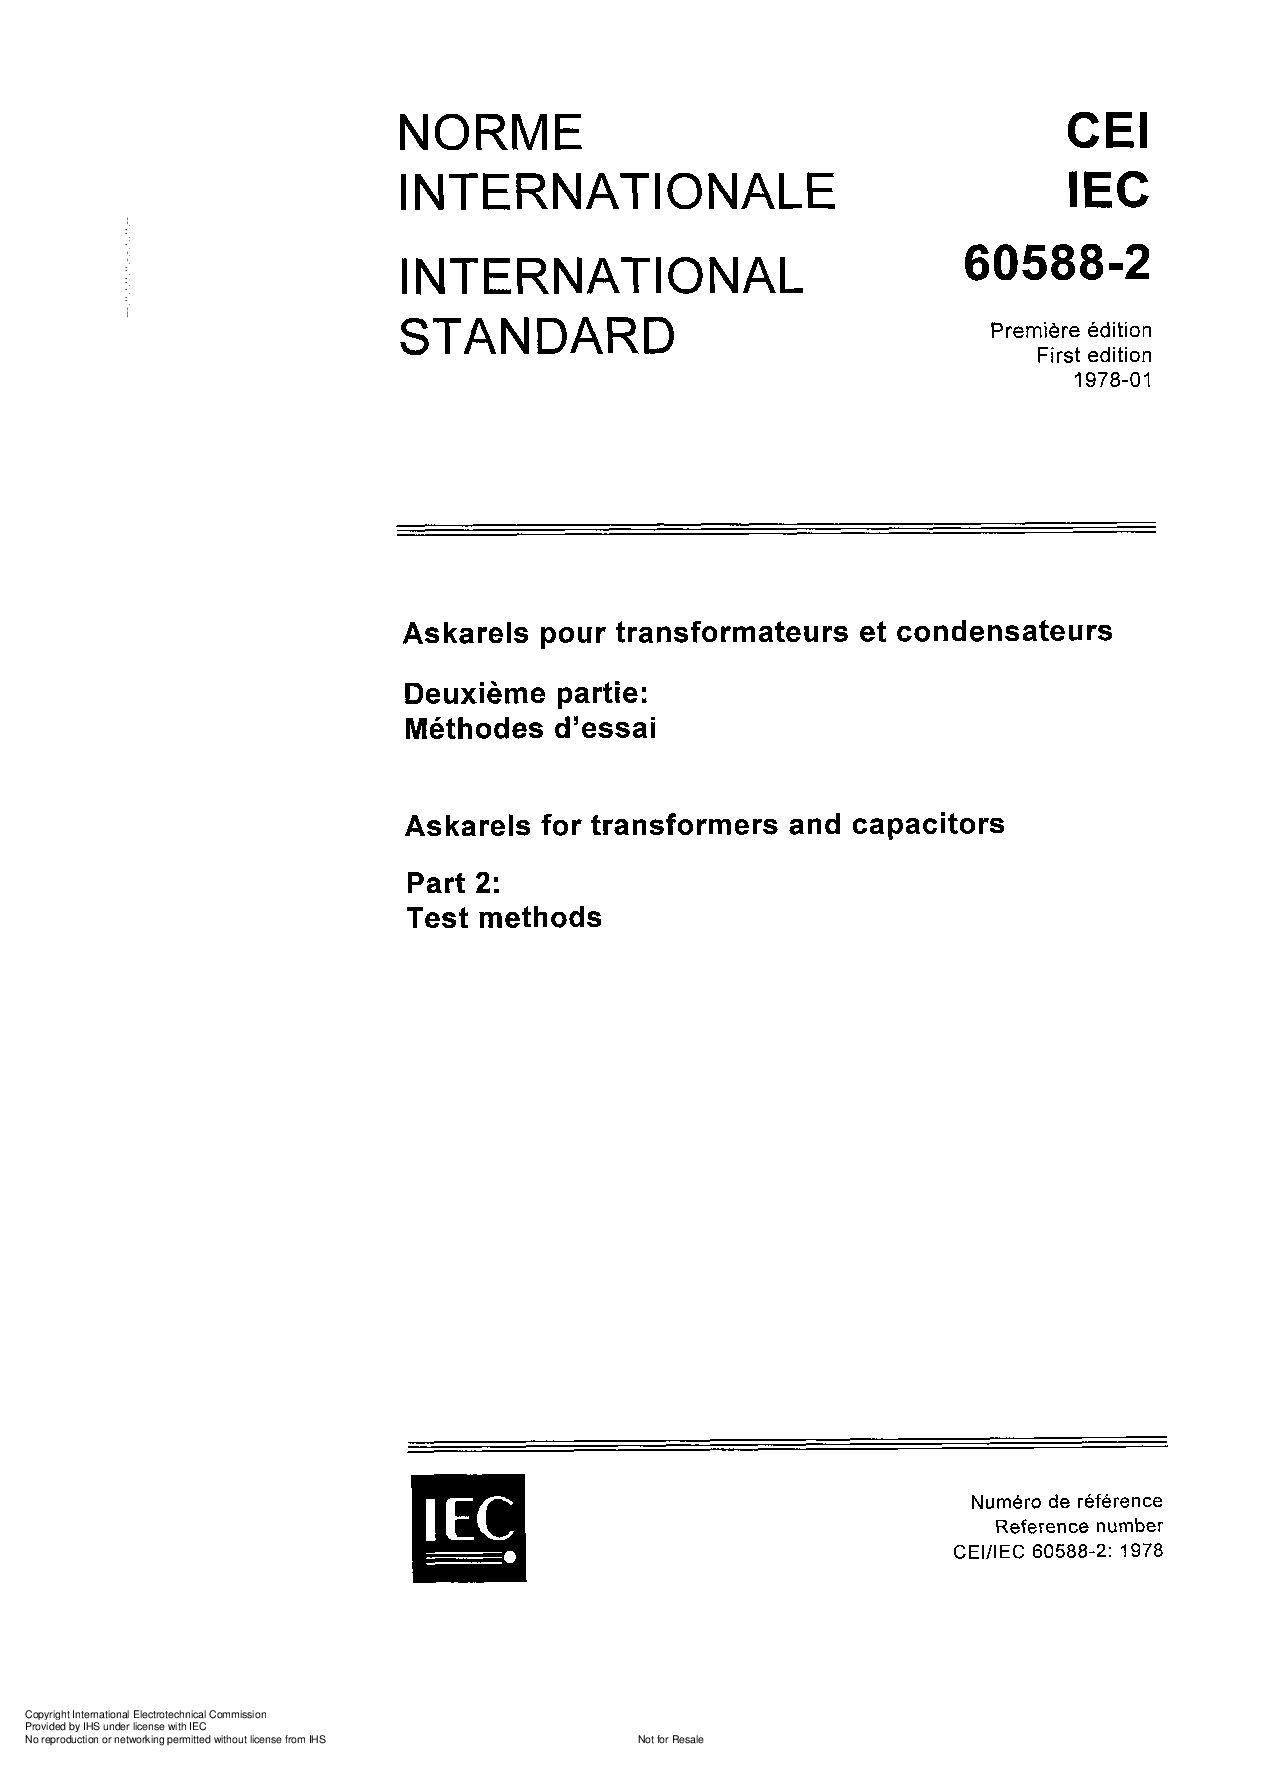 IEC 60588-2-1978